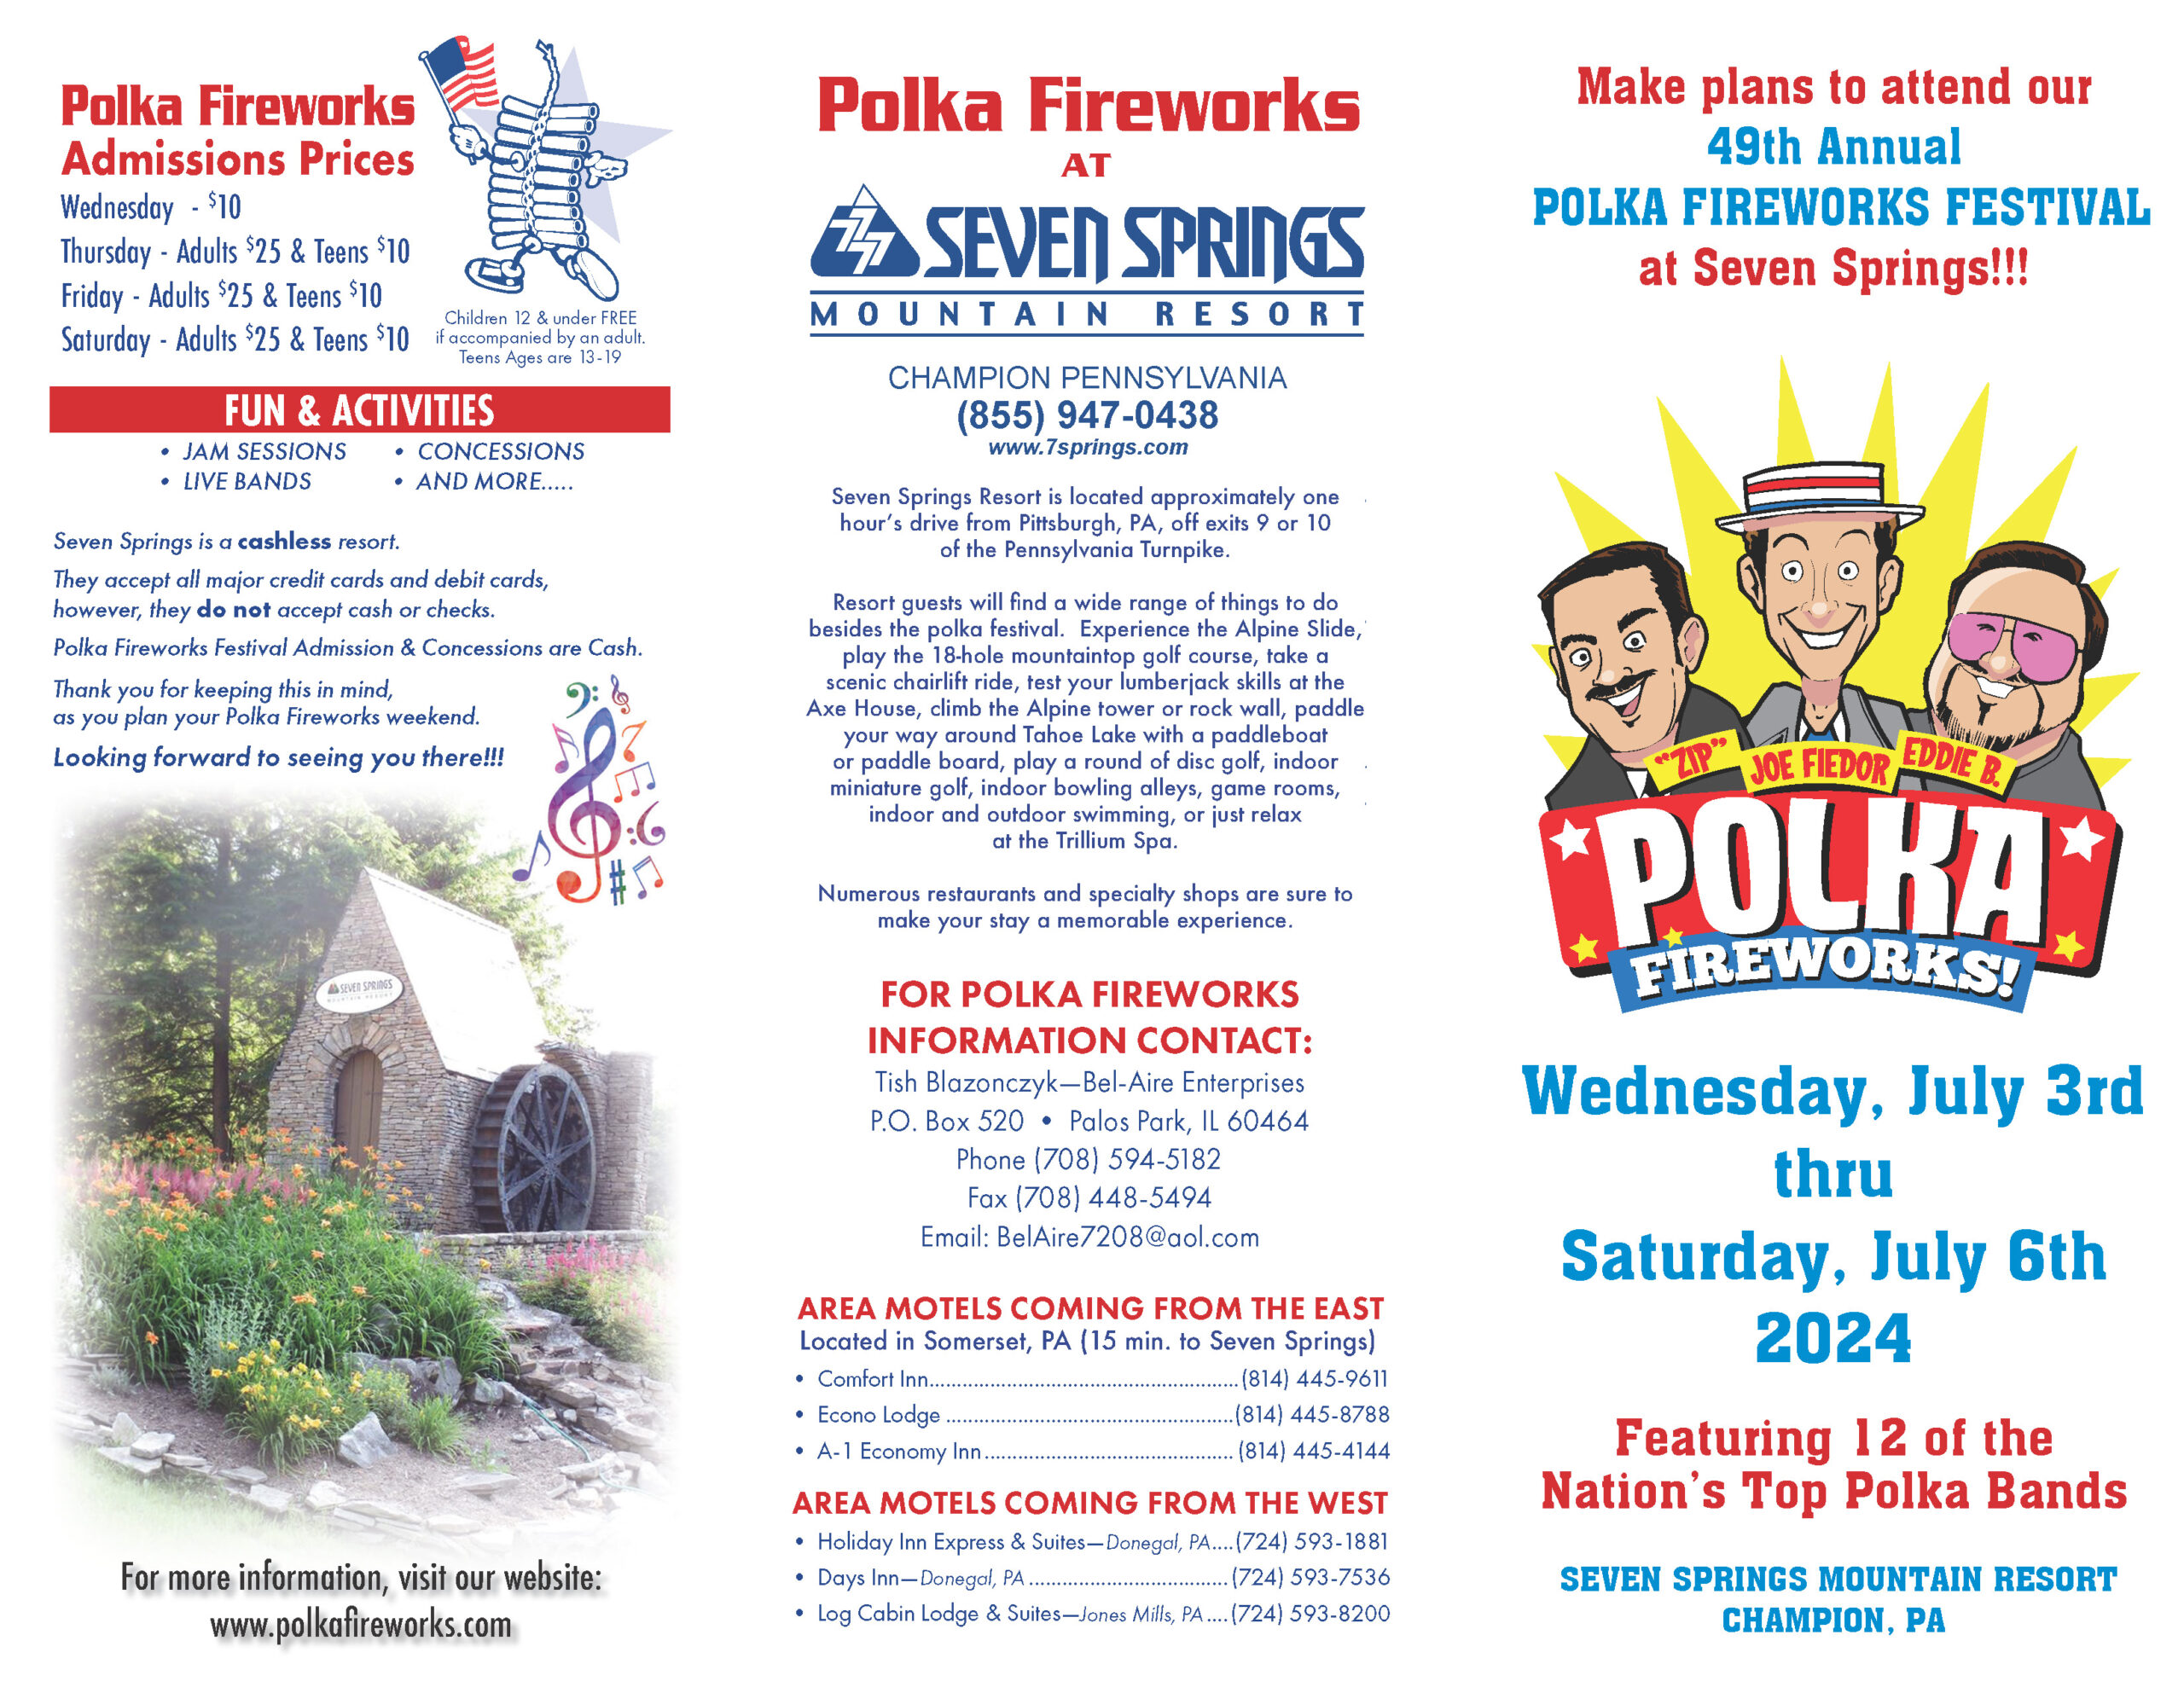 POLKA FIREWORKS FESTIVAL at Seven Springs